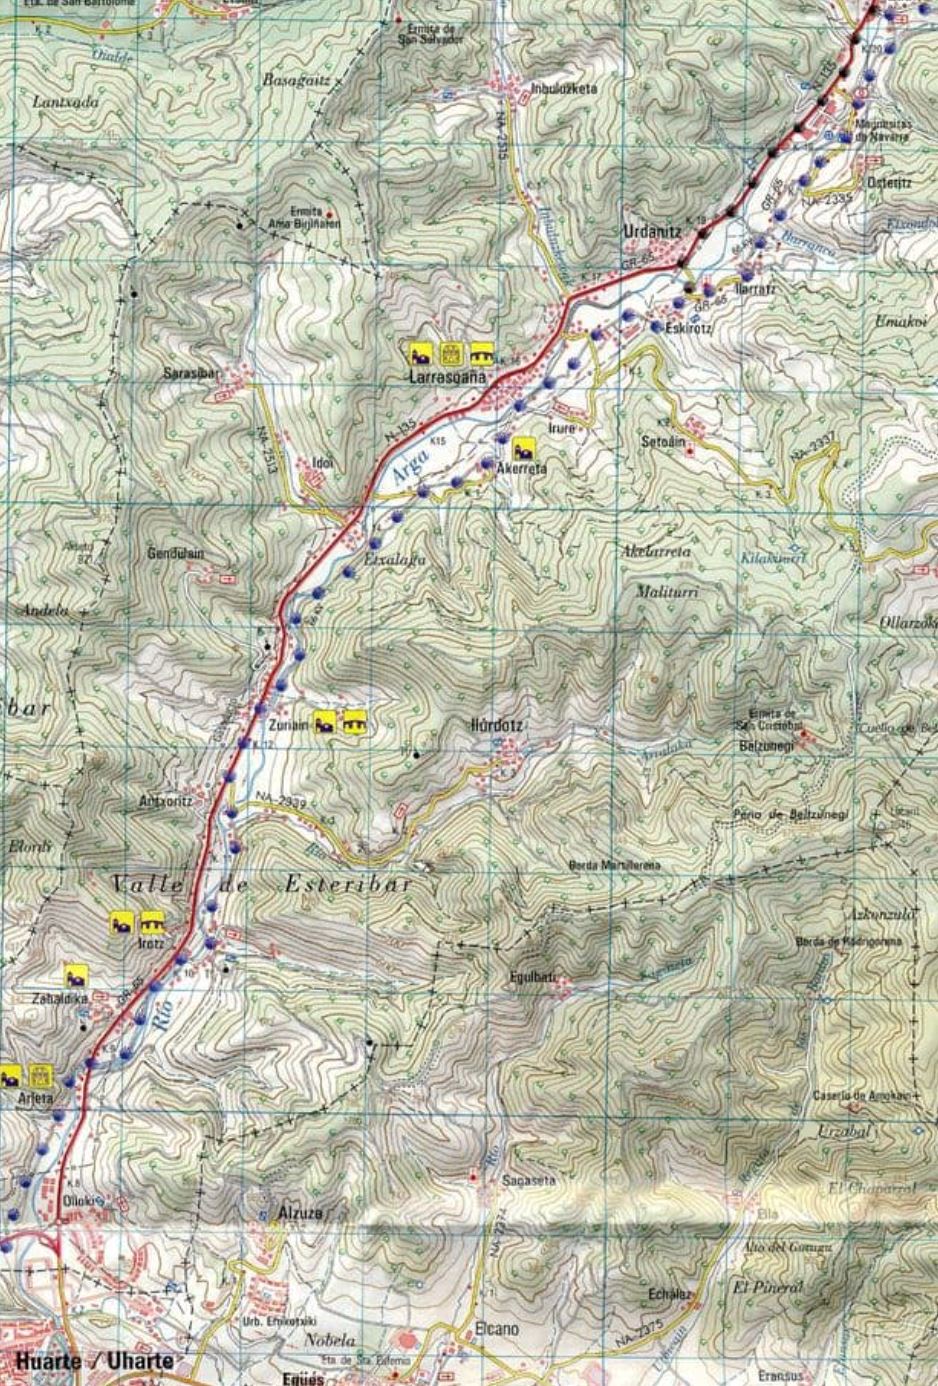 Lot de 10 Cartes topographiques - Chemin de St Jacques 38 étapes + vue d'ensemble | CNIG carte pliée CNIG 